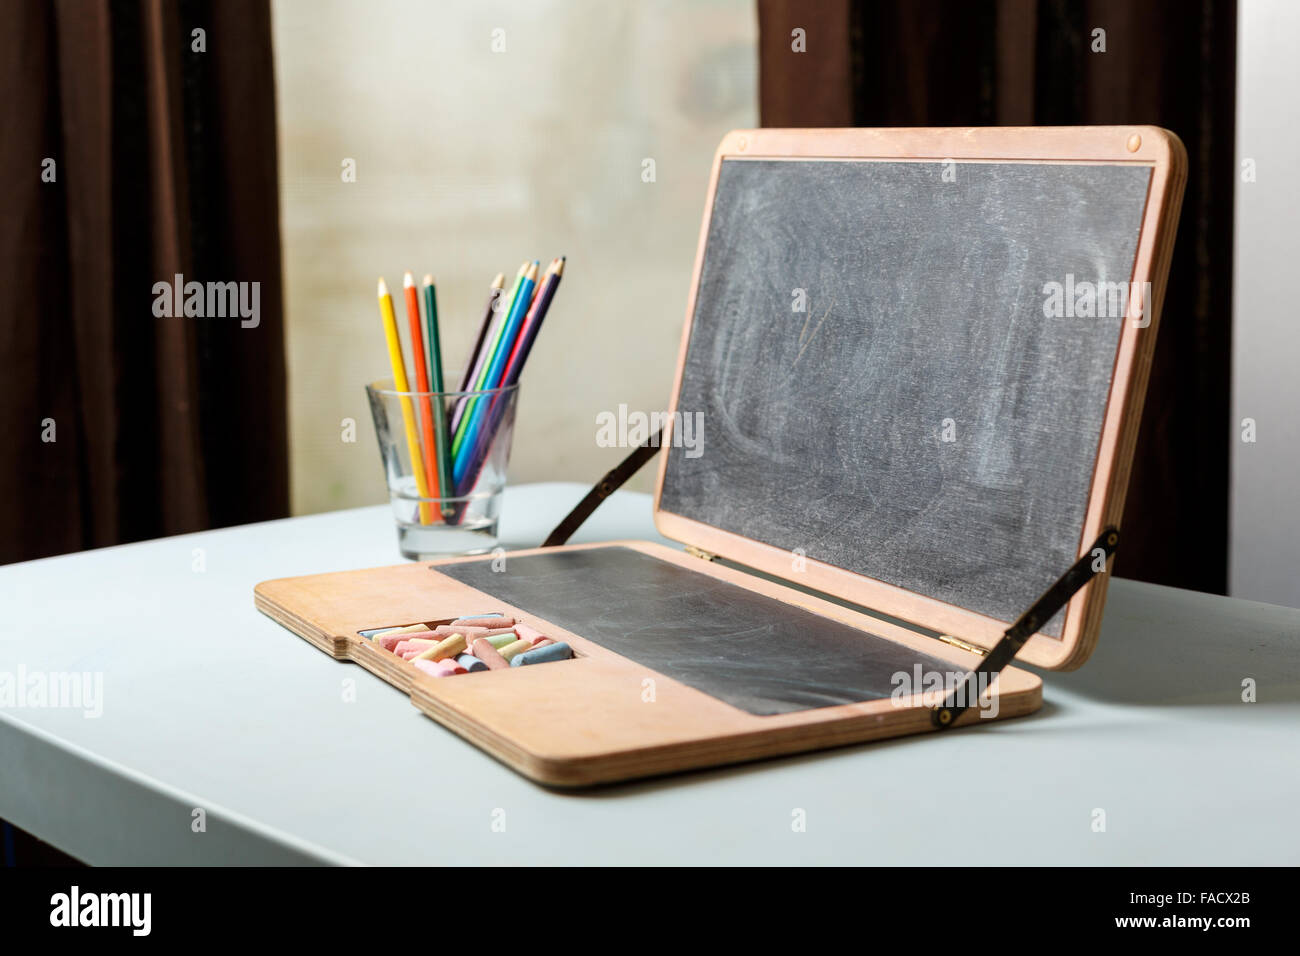 Dans un tableau sous forme d'un ordinateur portable avec les craies et les crayons de couleur dans un verre Banque D'Images